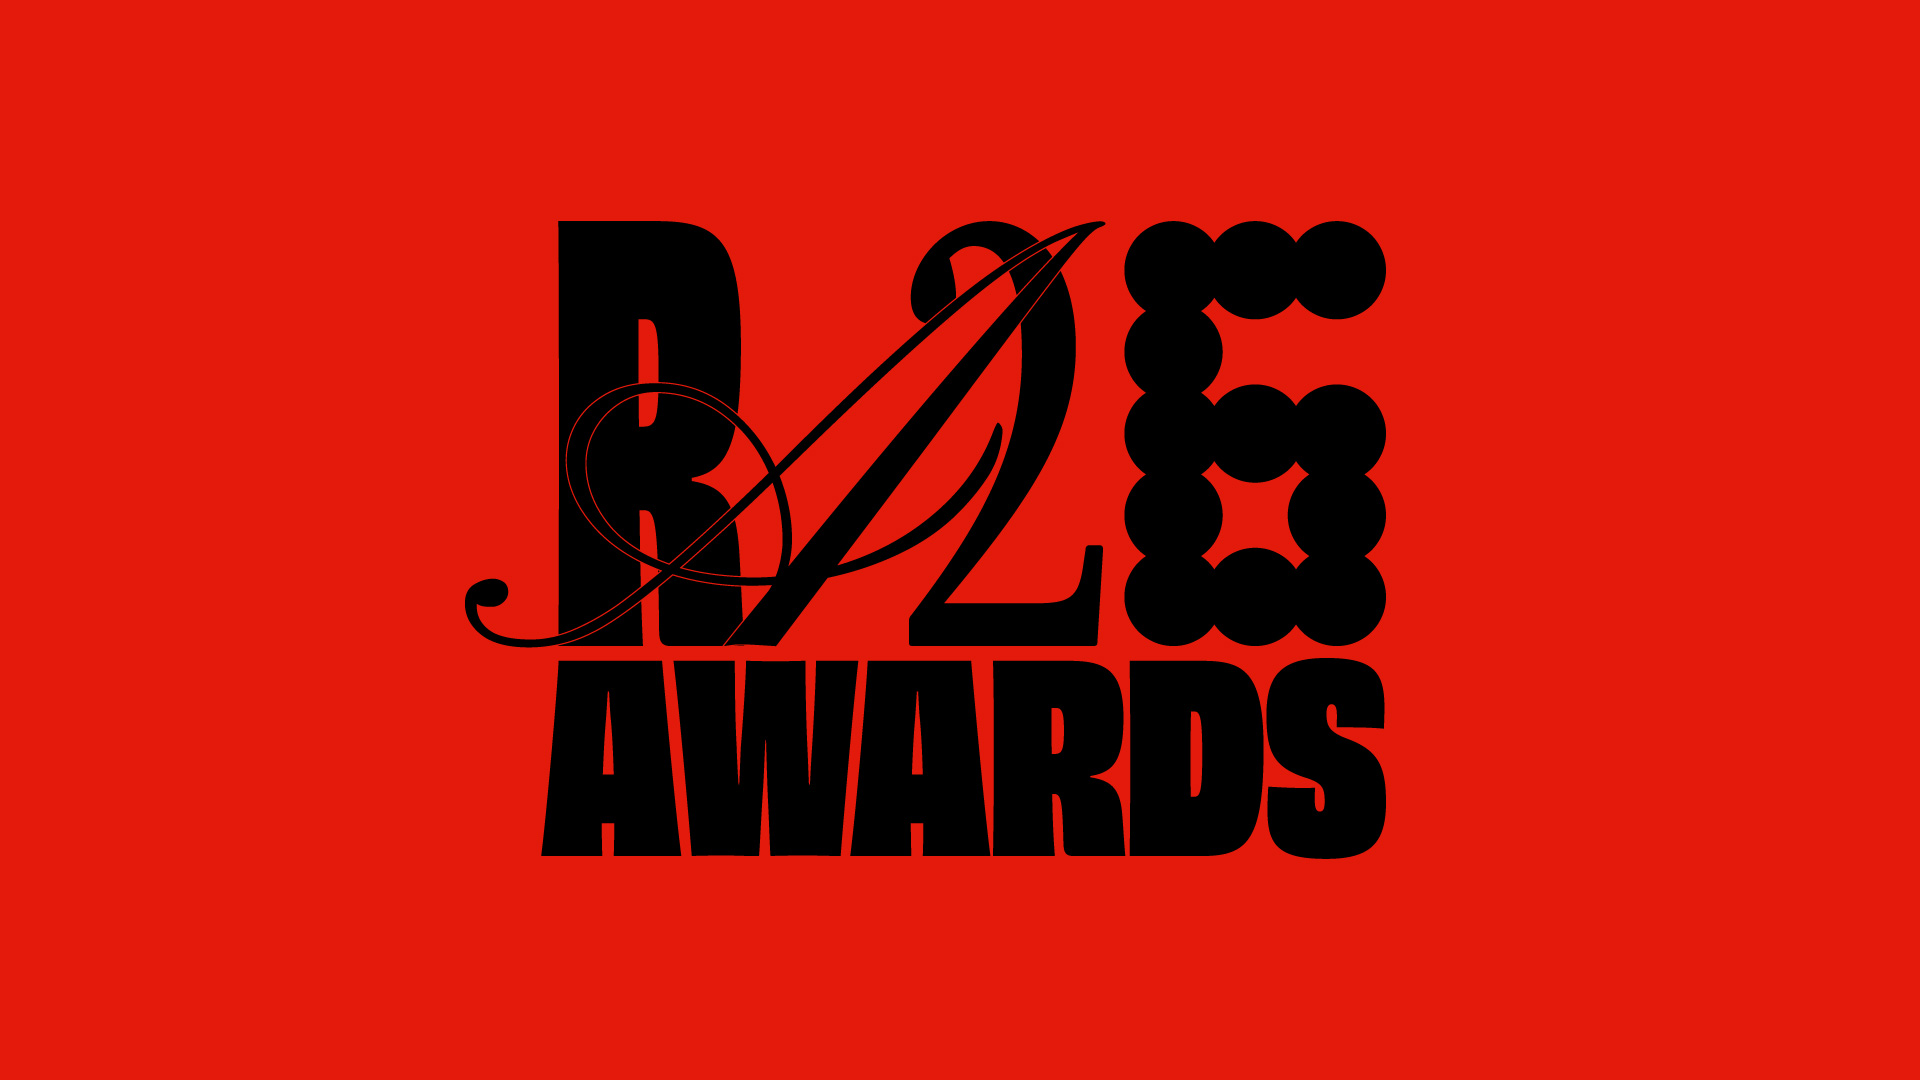 RA26 Awards Wordmark